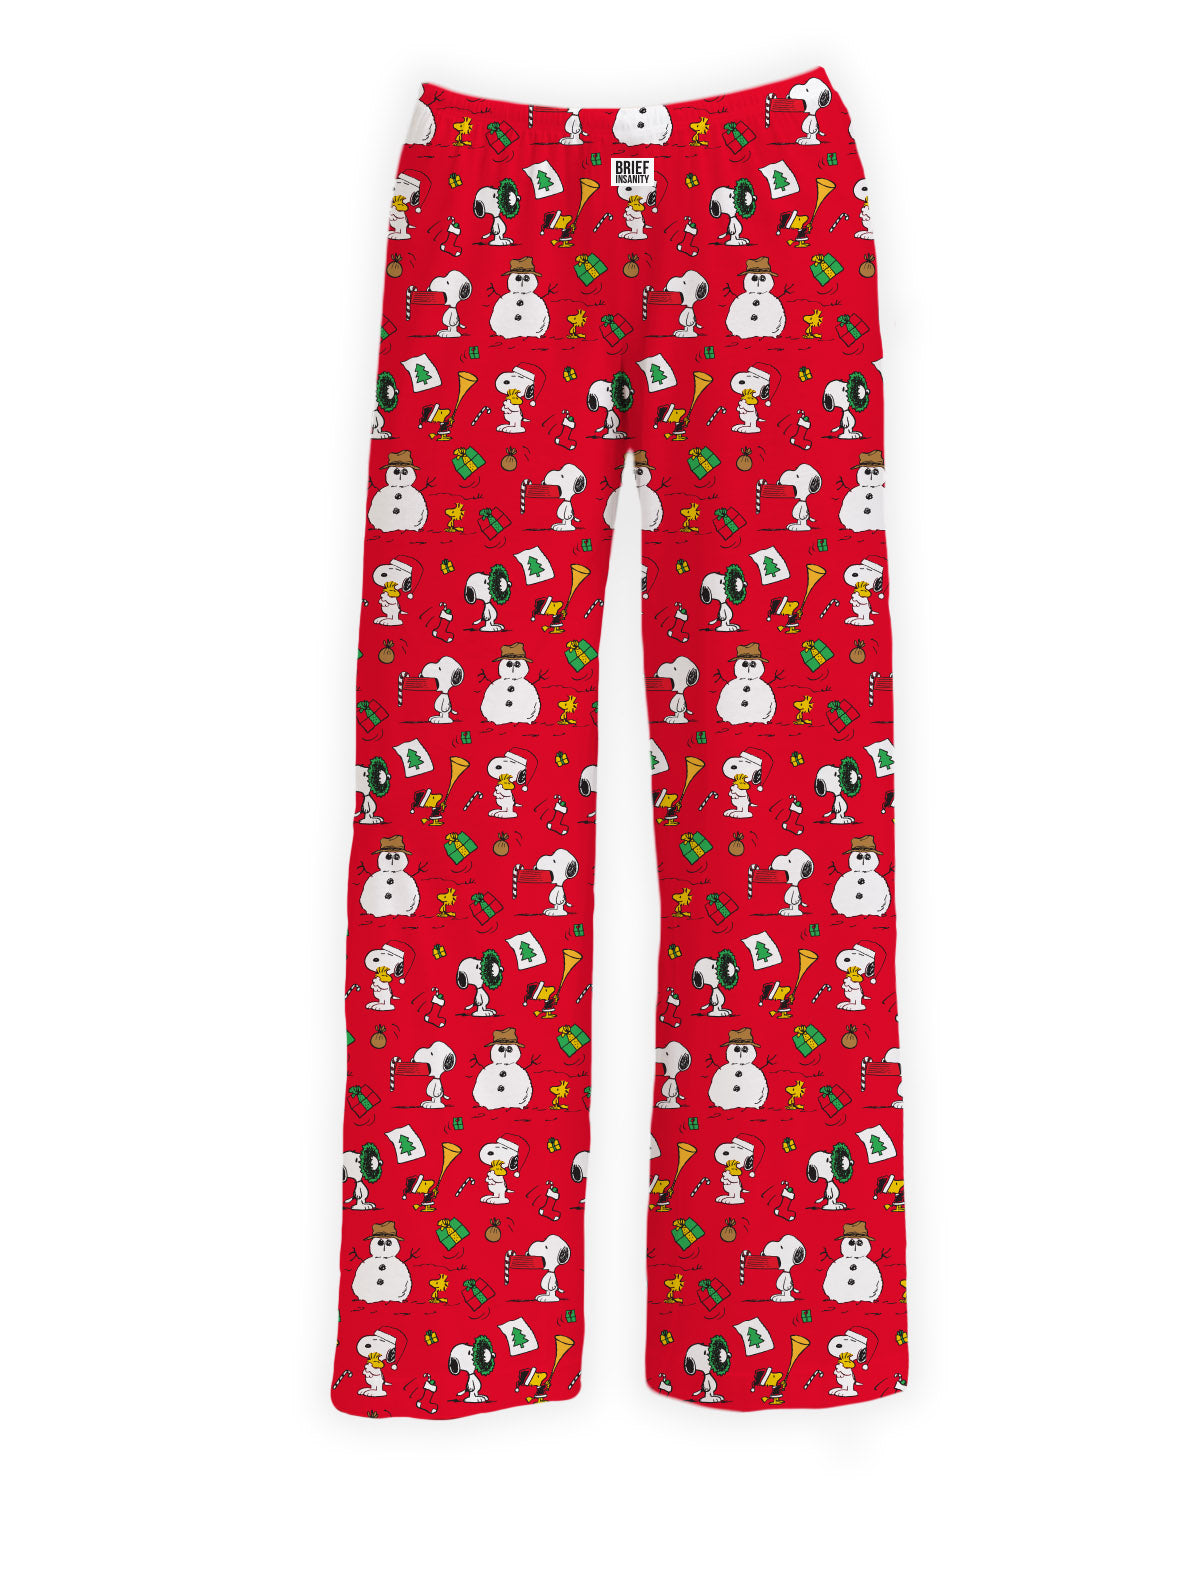 Fun Unisex Boxers & Holiday Family Pajamas | Brief Insanity